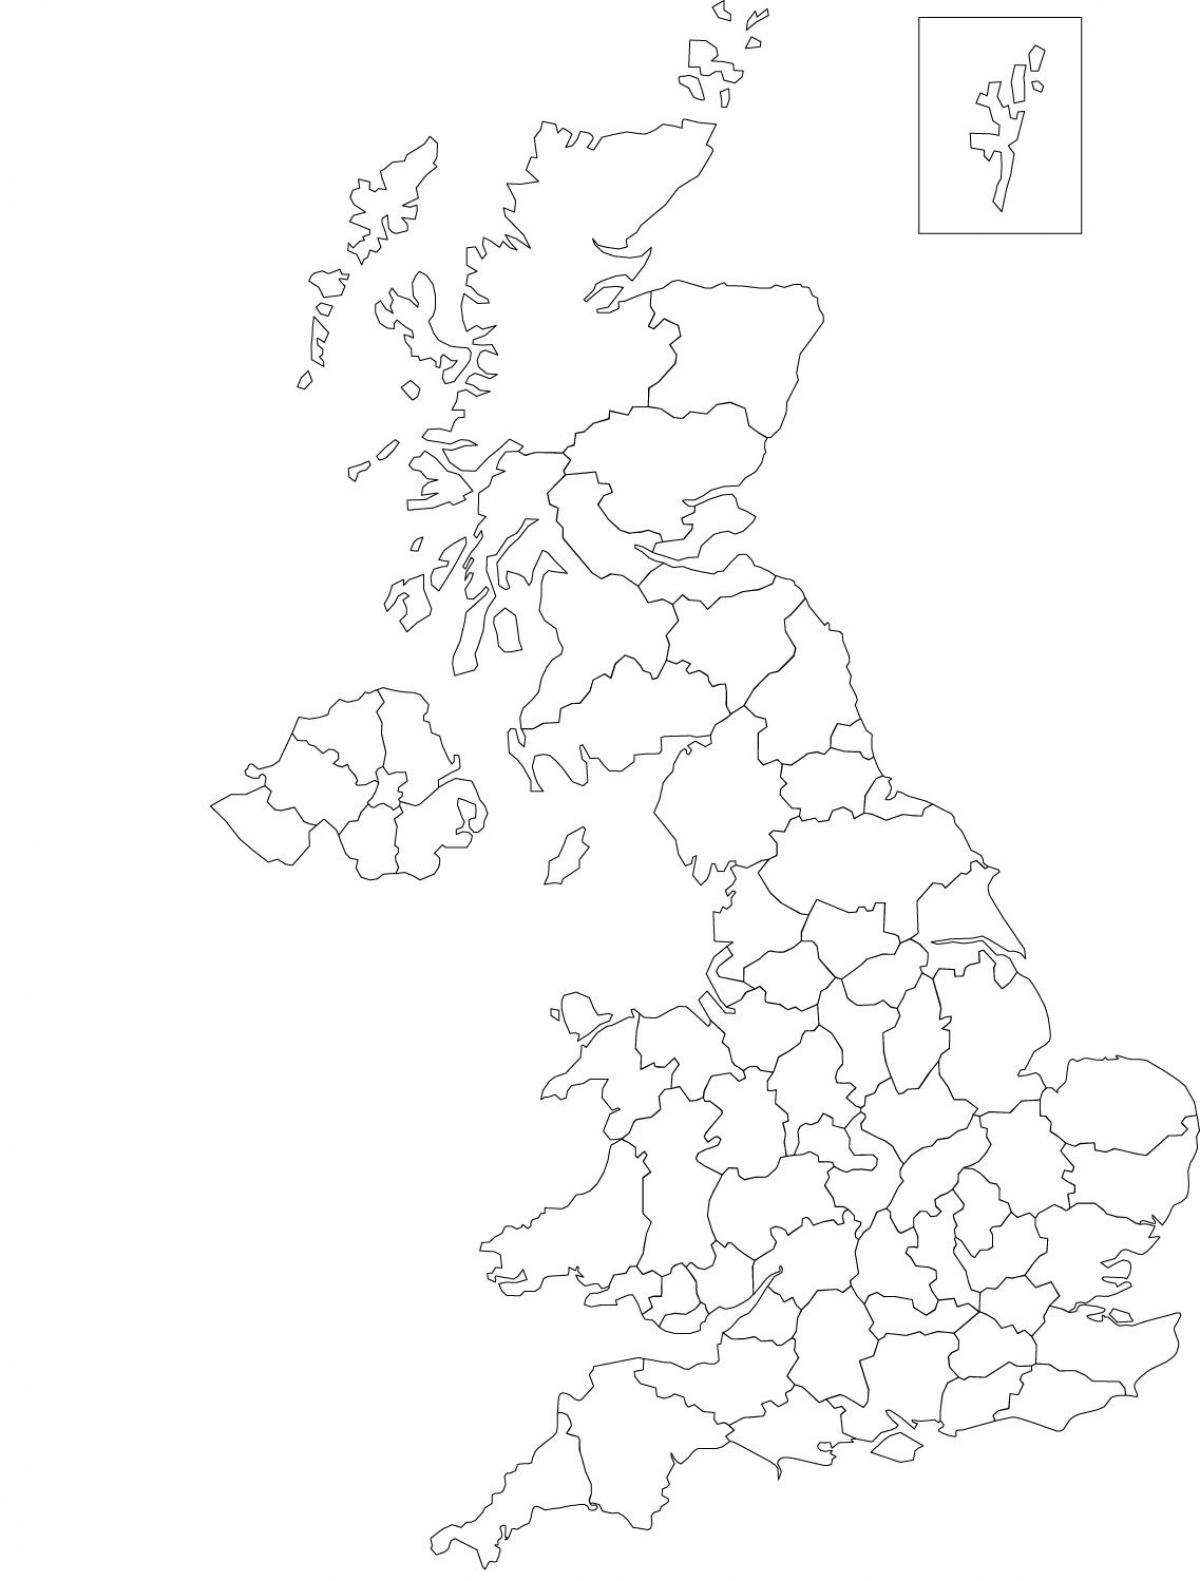 De kaart met de contouren van het Verenigd Koninkrijk (VK)